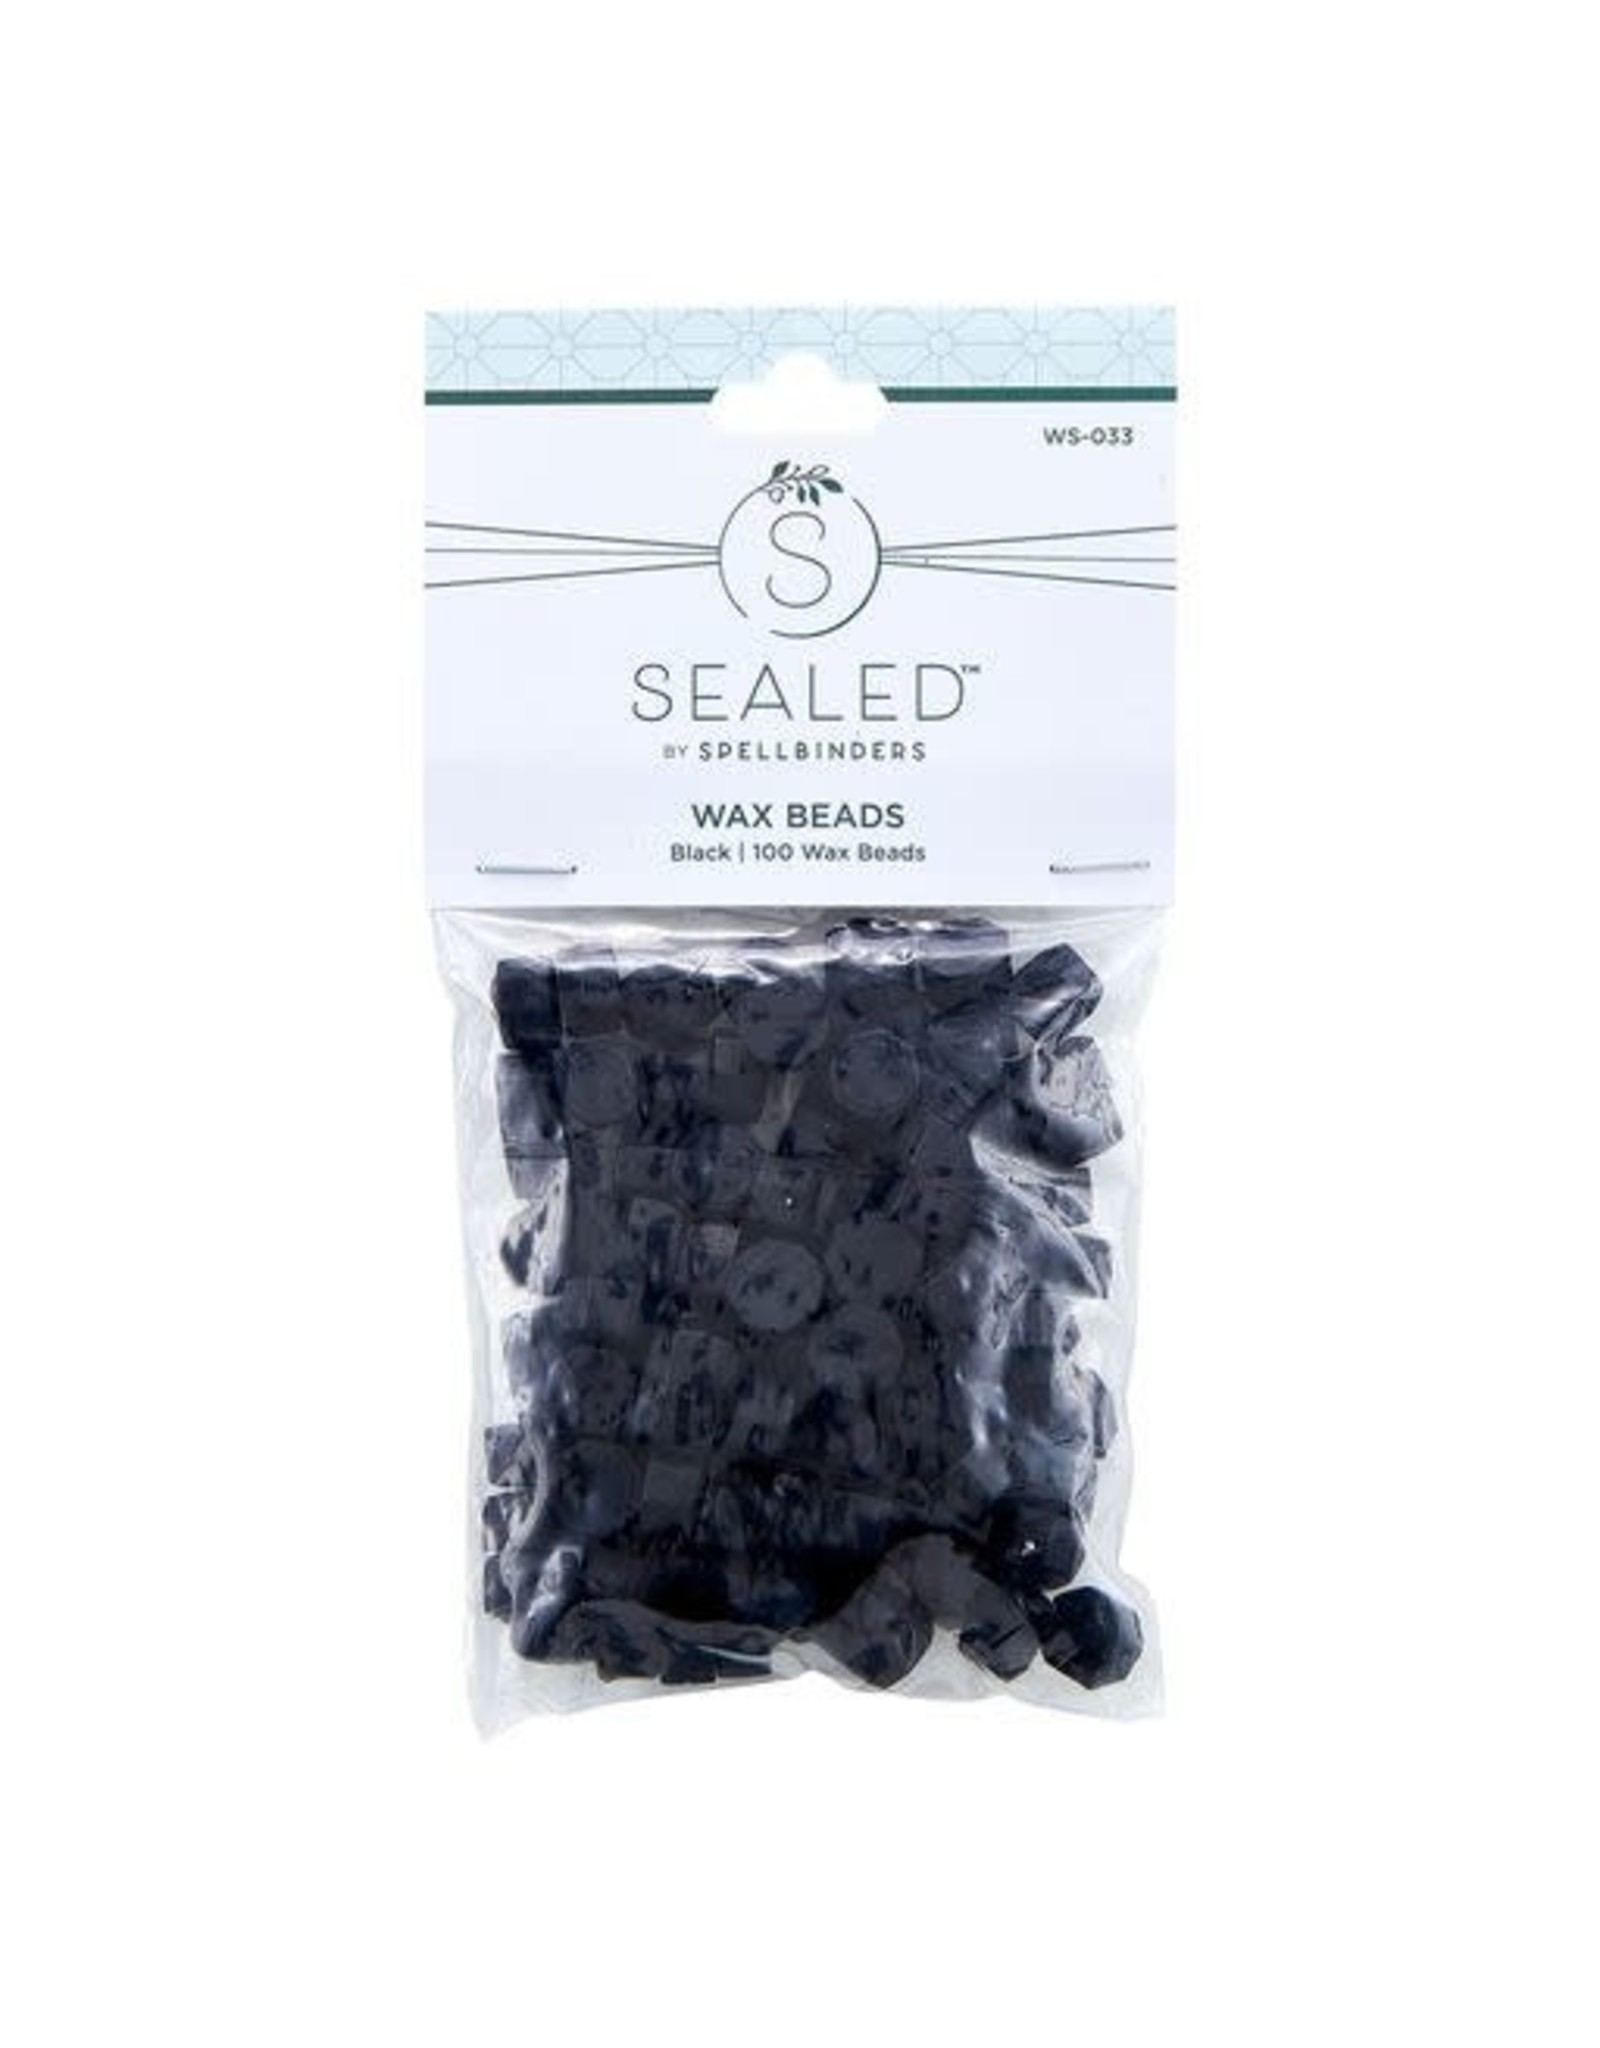 Spellbinders Black Wax Beads from Sealed